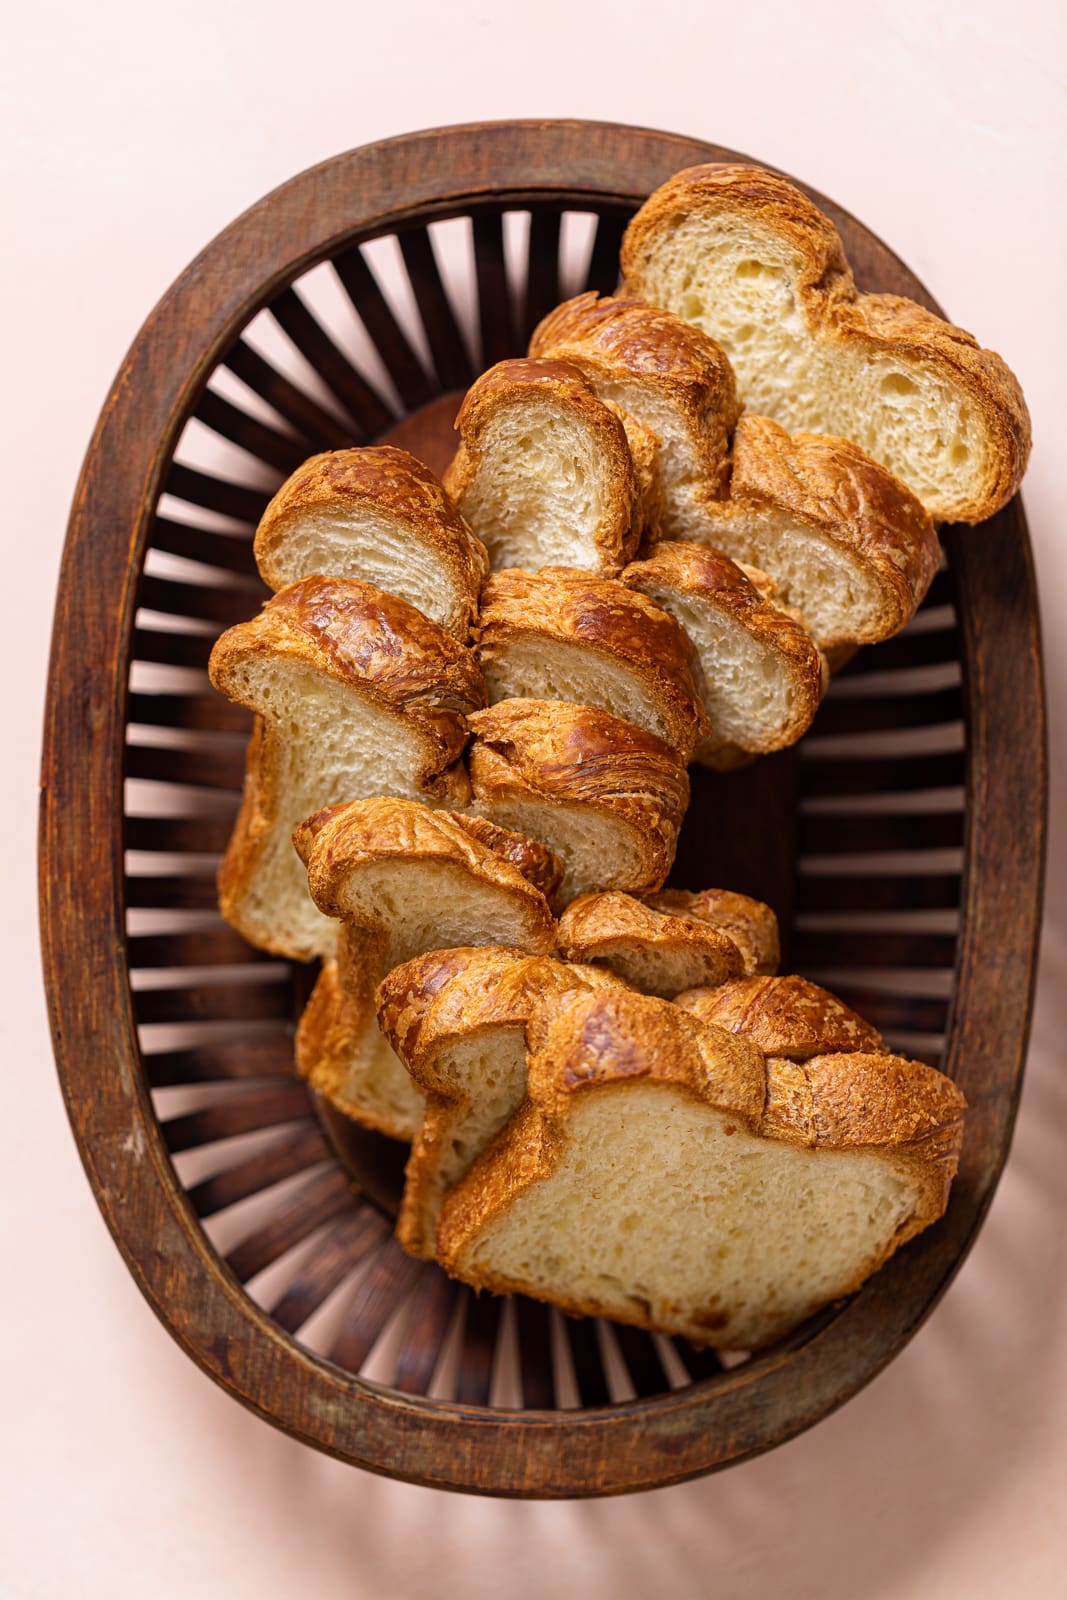 Basket of sliced bread